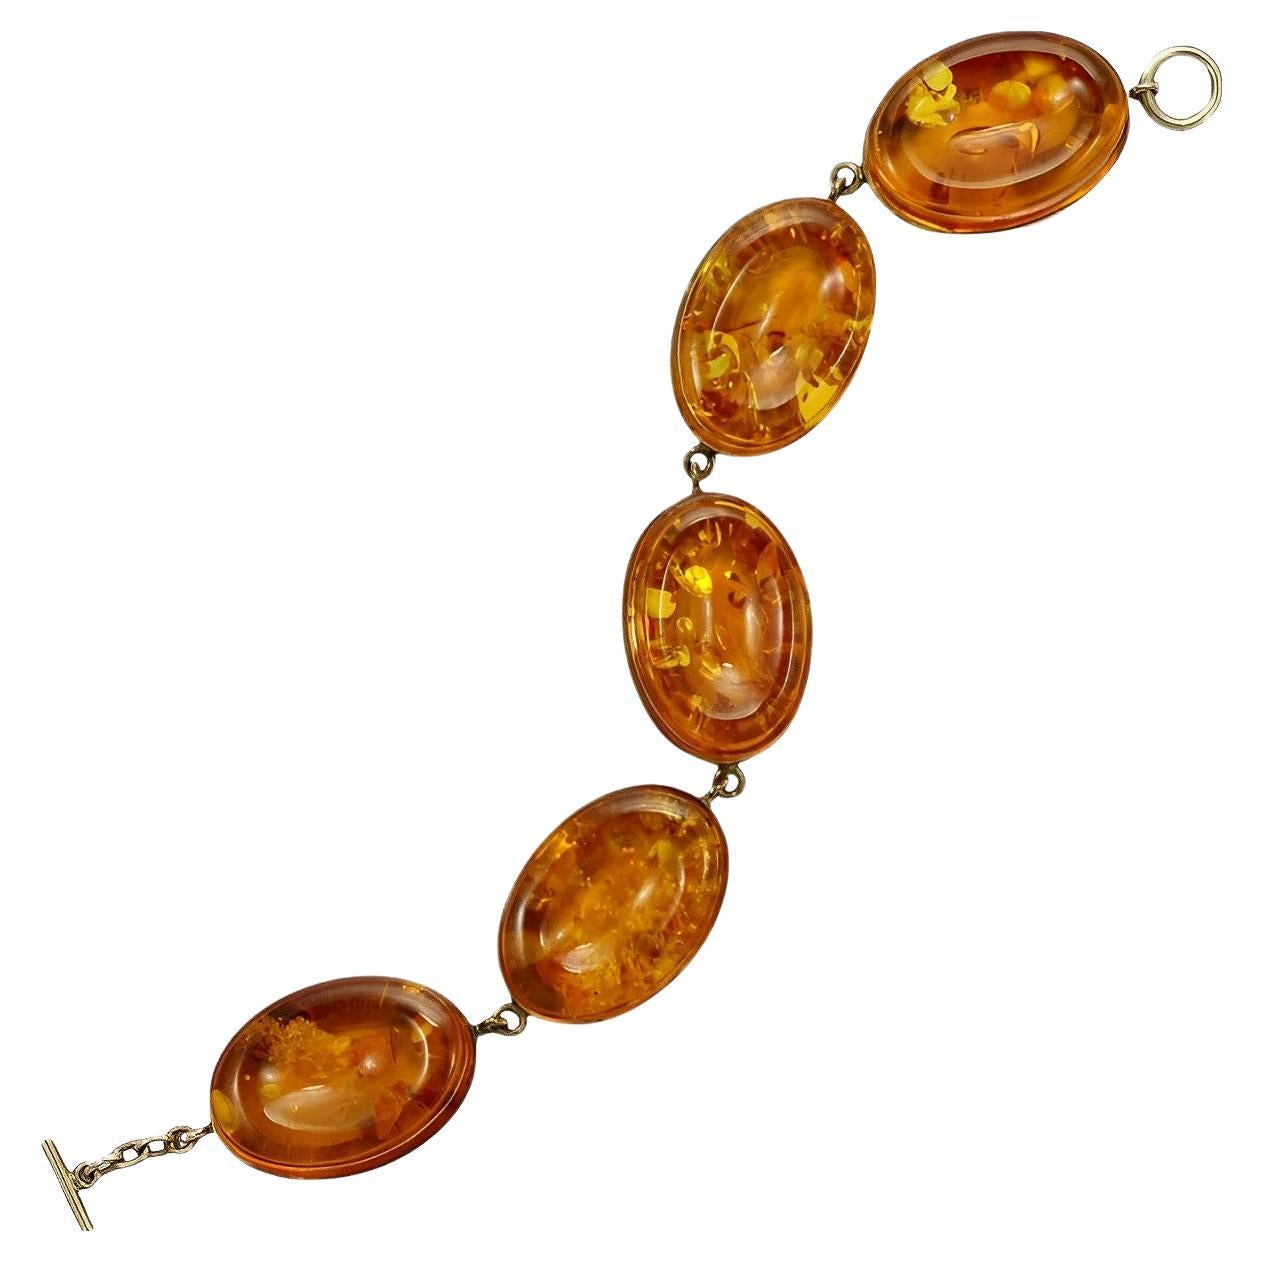 Oval Polished Amber Link Bracelet Set in Gold Vermeil on Sterling Silver Links